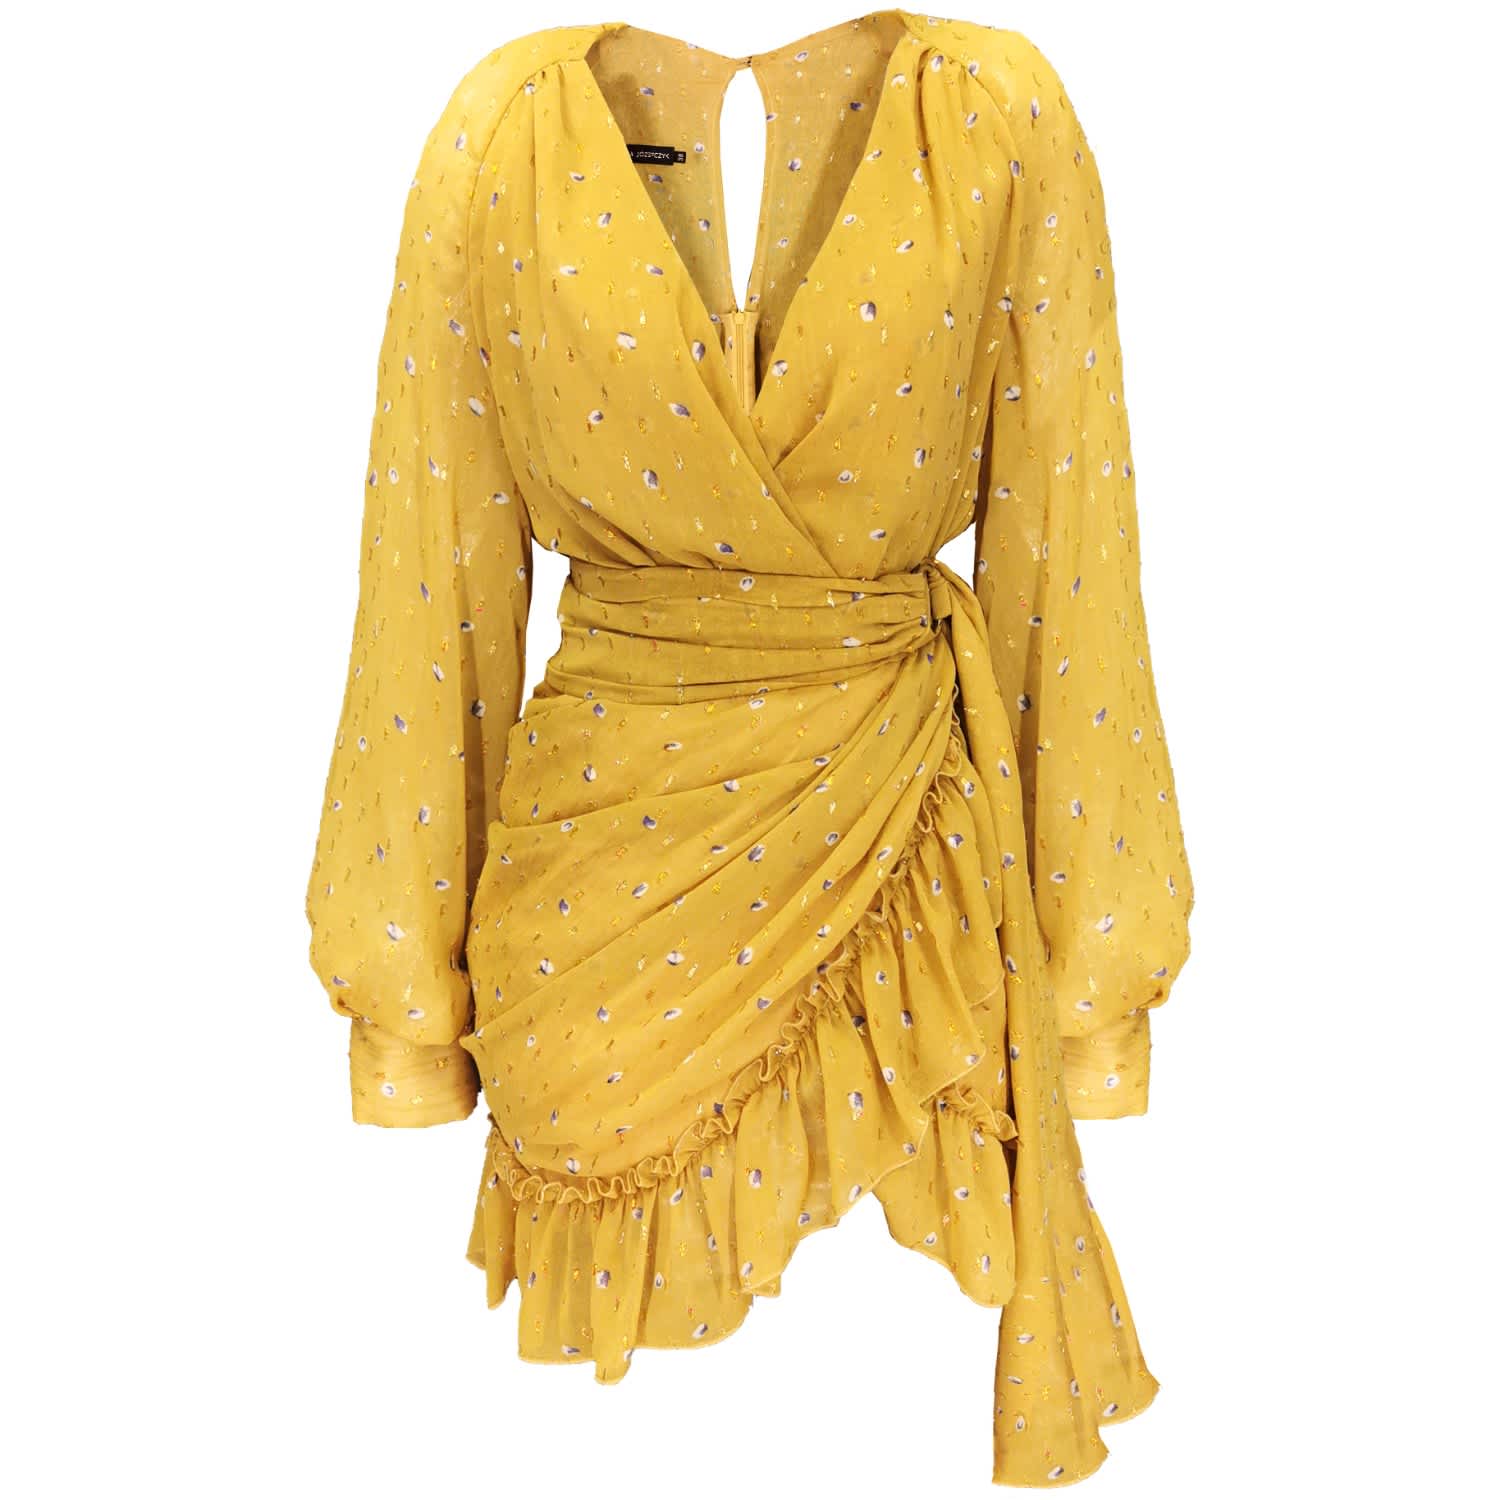 yellow frill dress